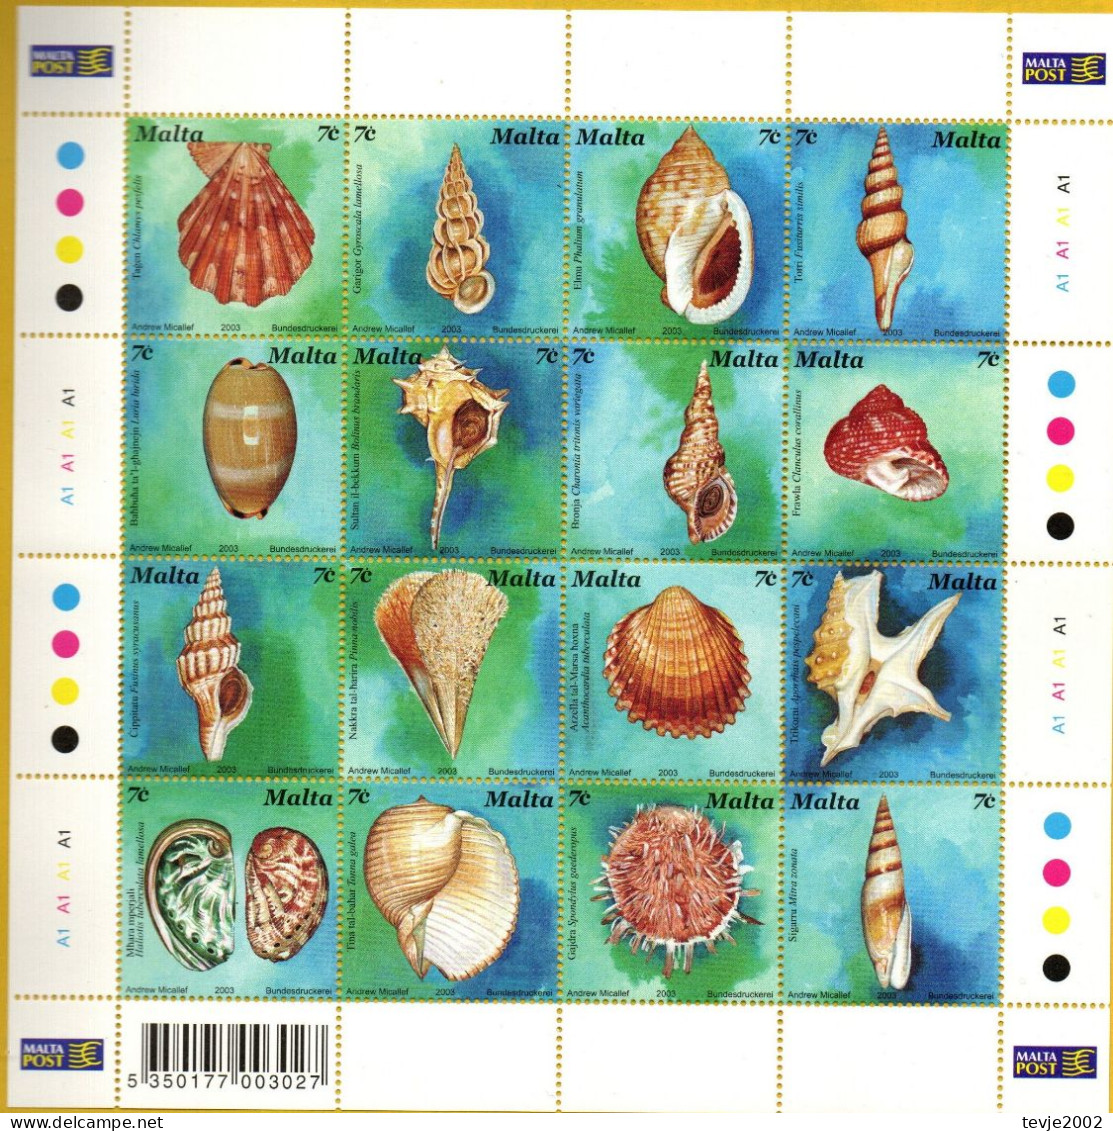 Malta 2003 - Mi.Nr. 1286 - 1301 Kleinbogen - Postfrisch MNH - Tiere Animals Muscheln Shellfish - Coneshells